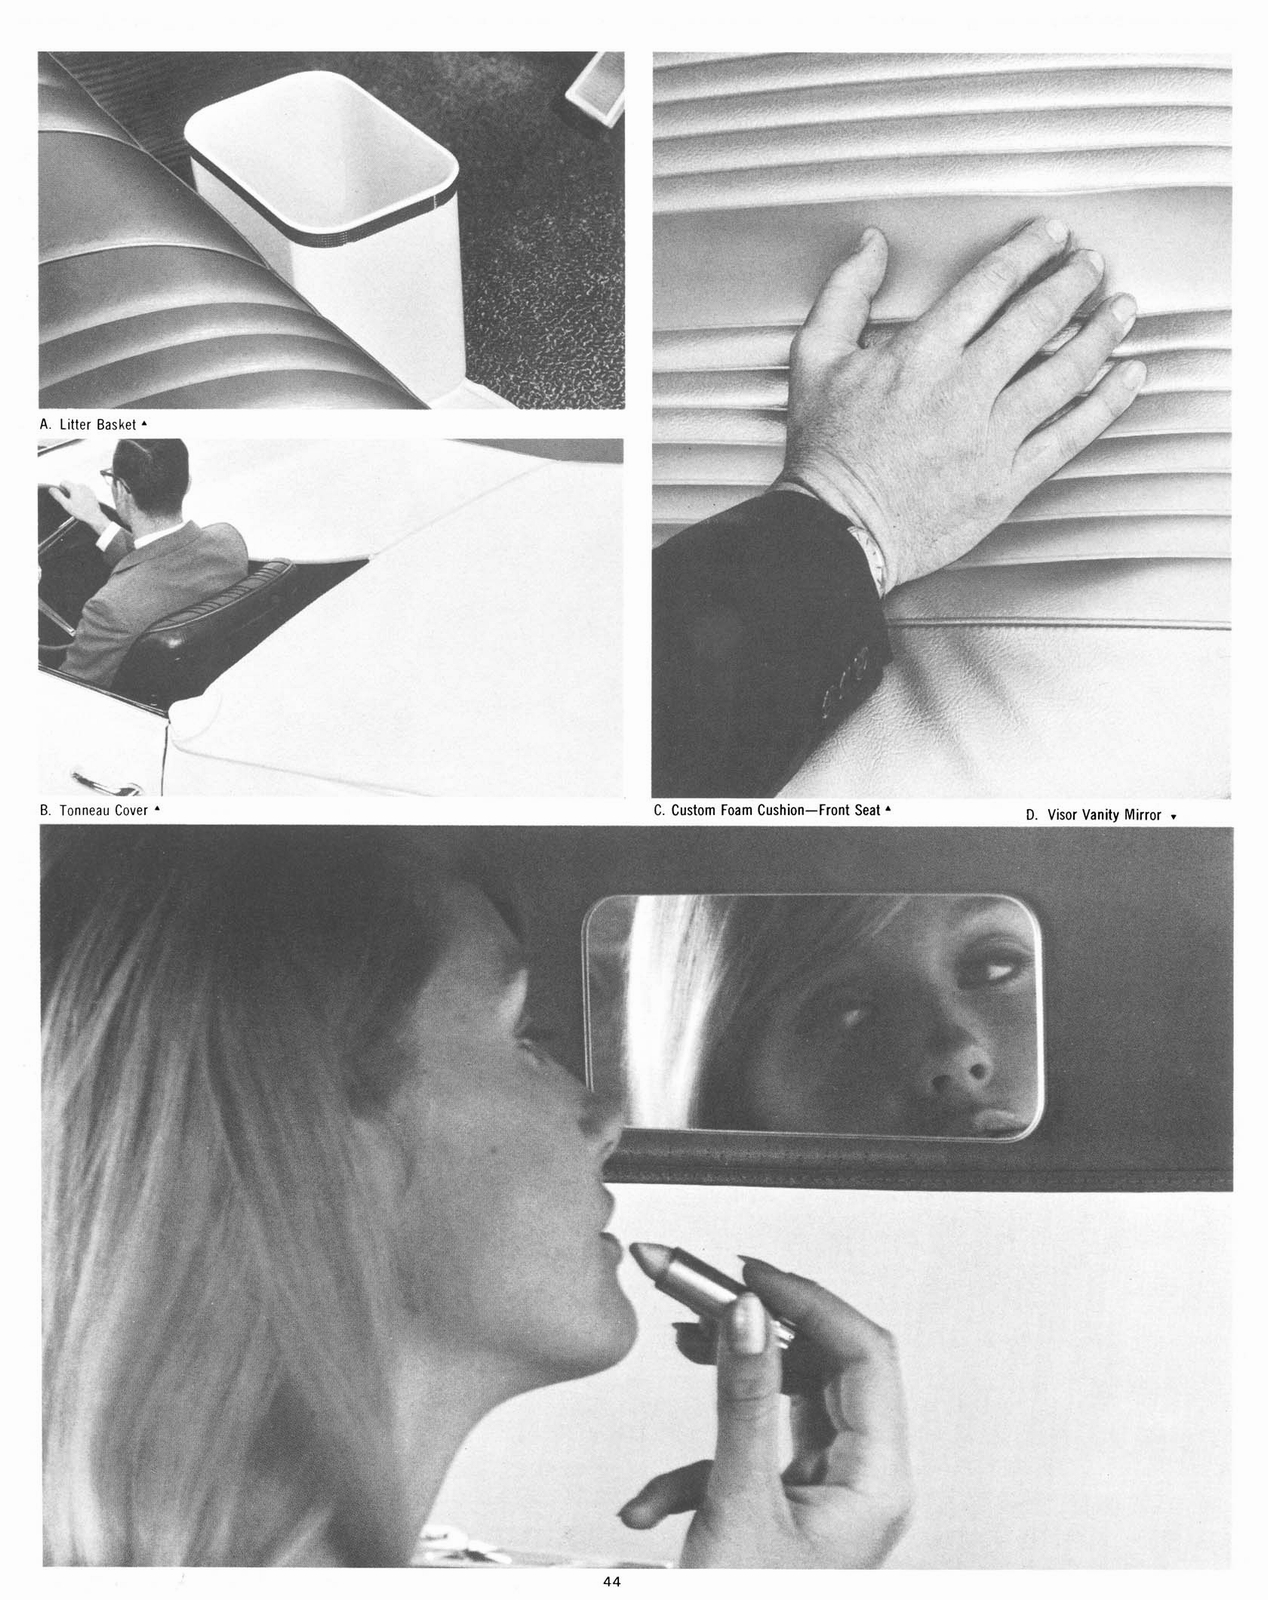 n_1967 Pontiac Accessories-44.jpg